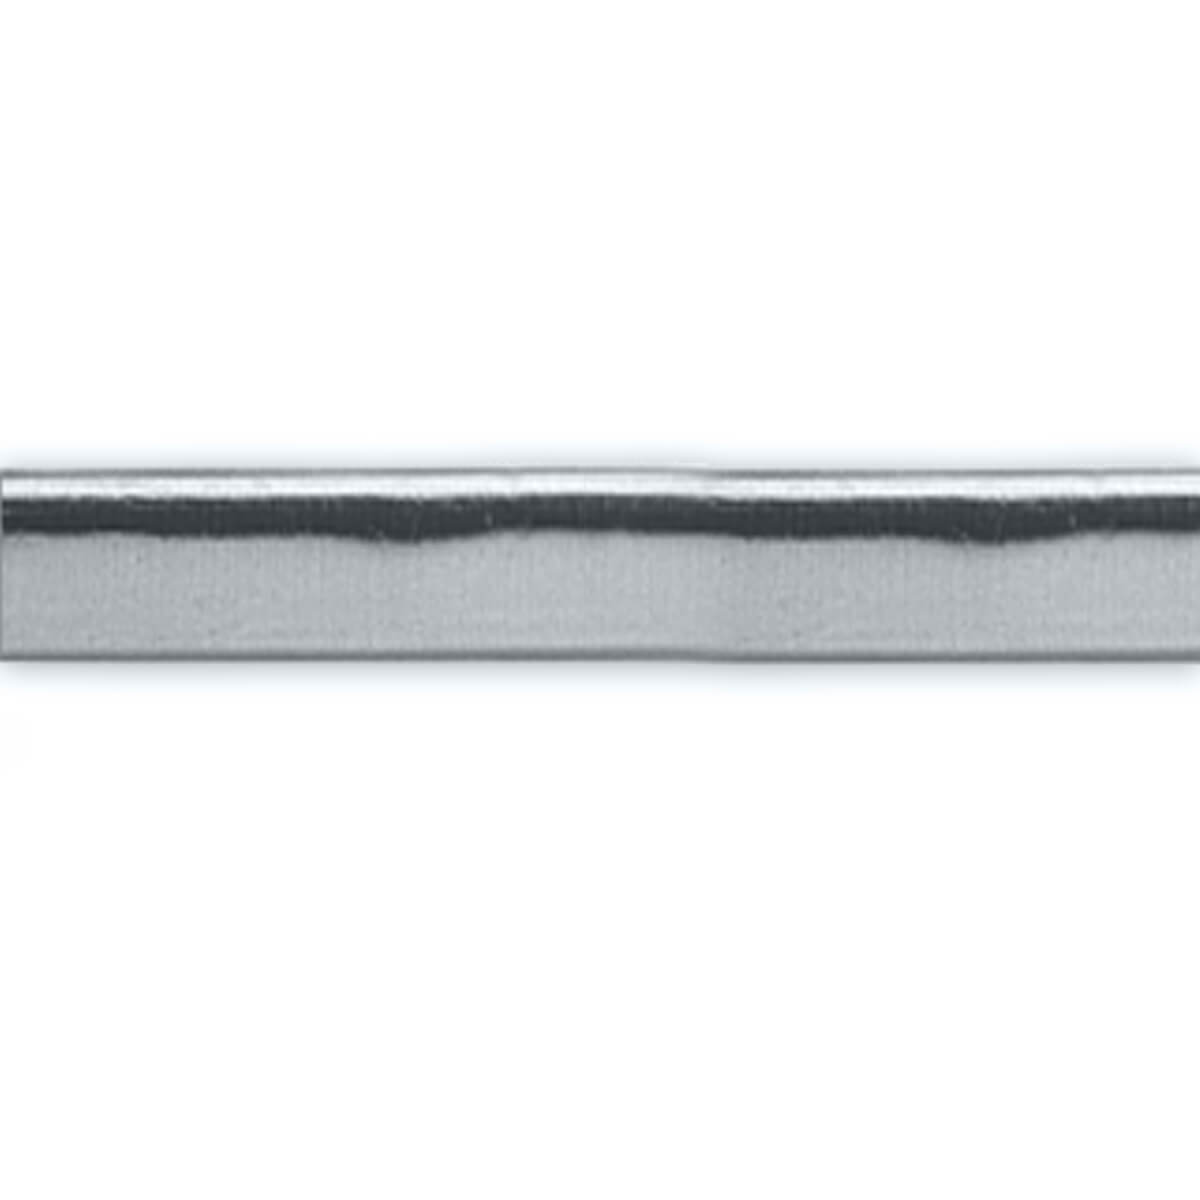 Silberstreifen flach - 450 x 7 mm